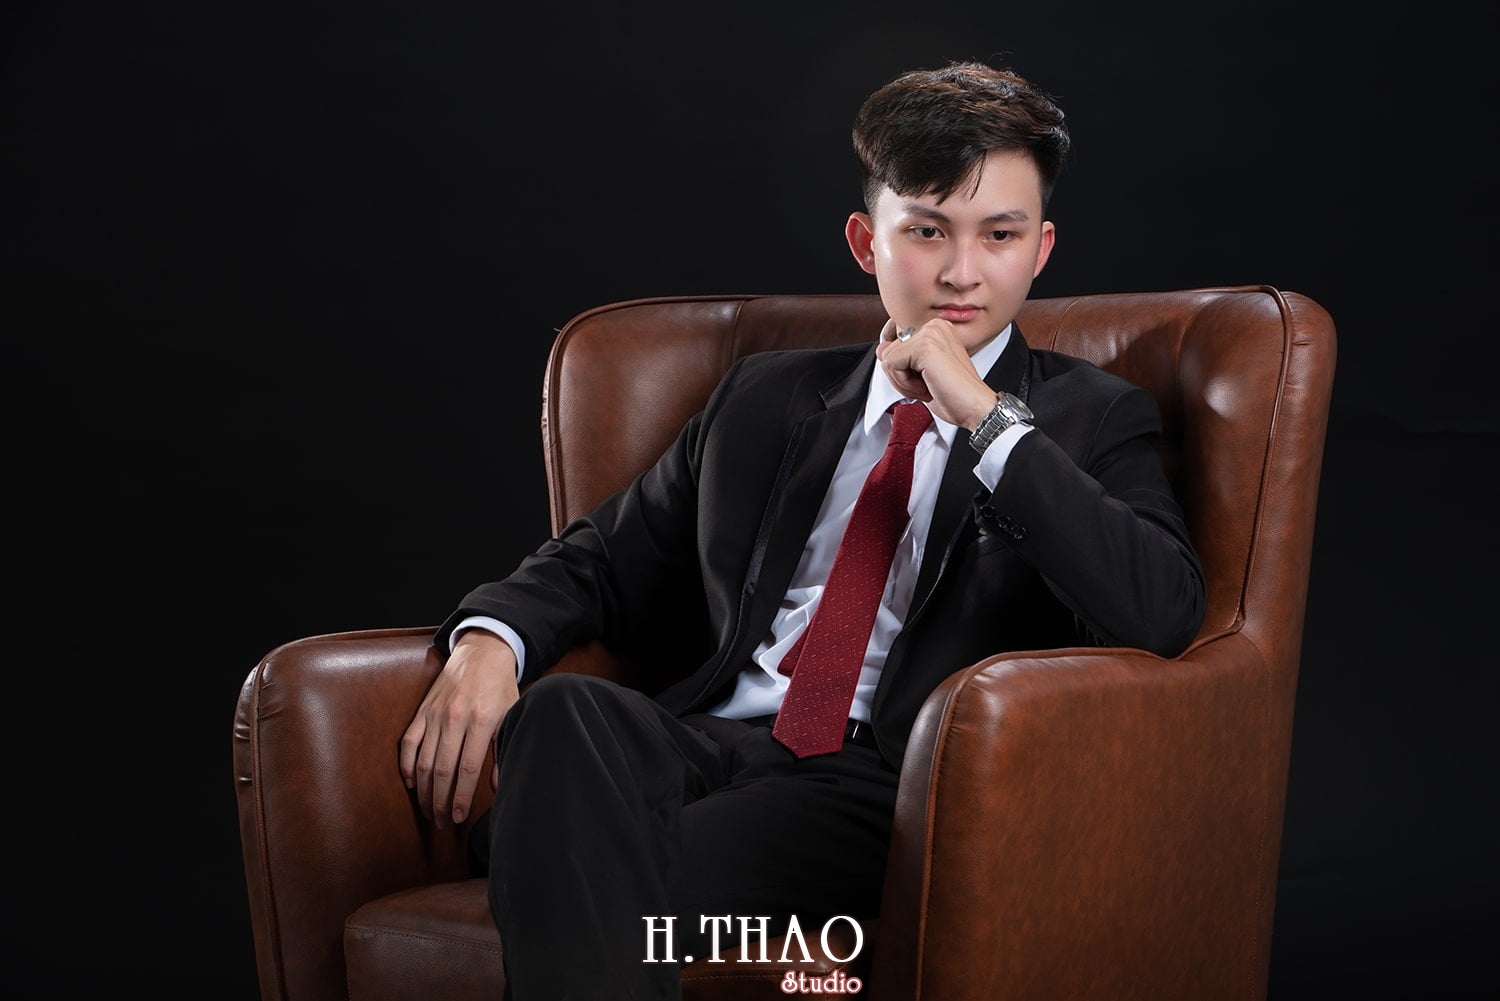 Anh profile 14 2 - Album tổng hợp ảnh doanh nhân trẻ đẹp Tháng 10- HThao Studio